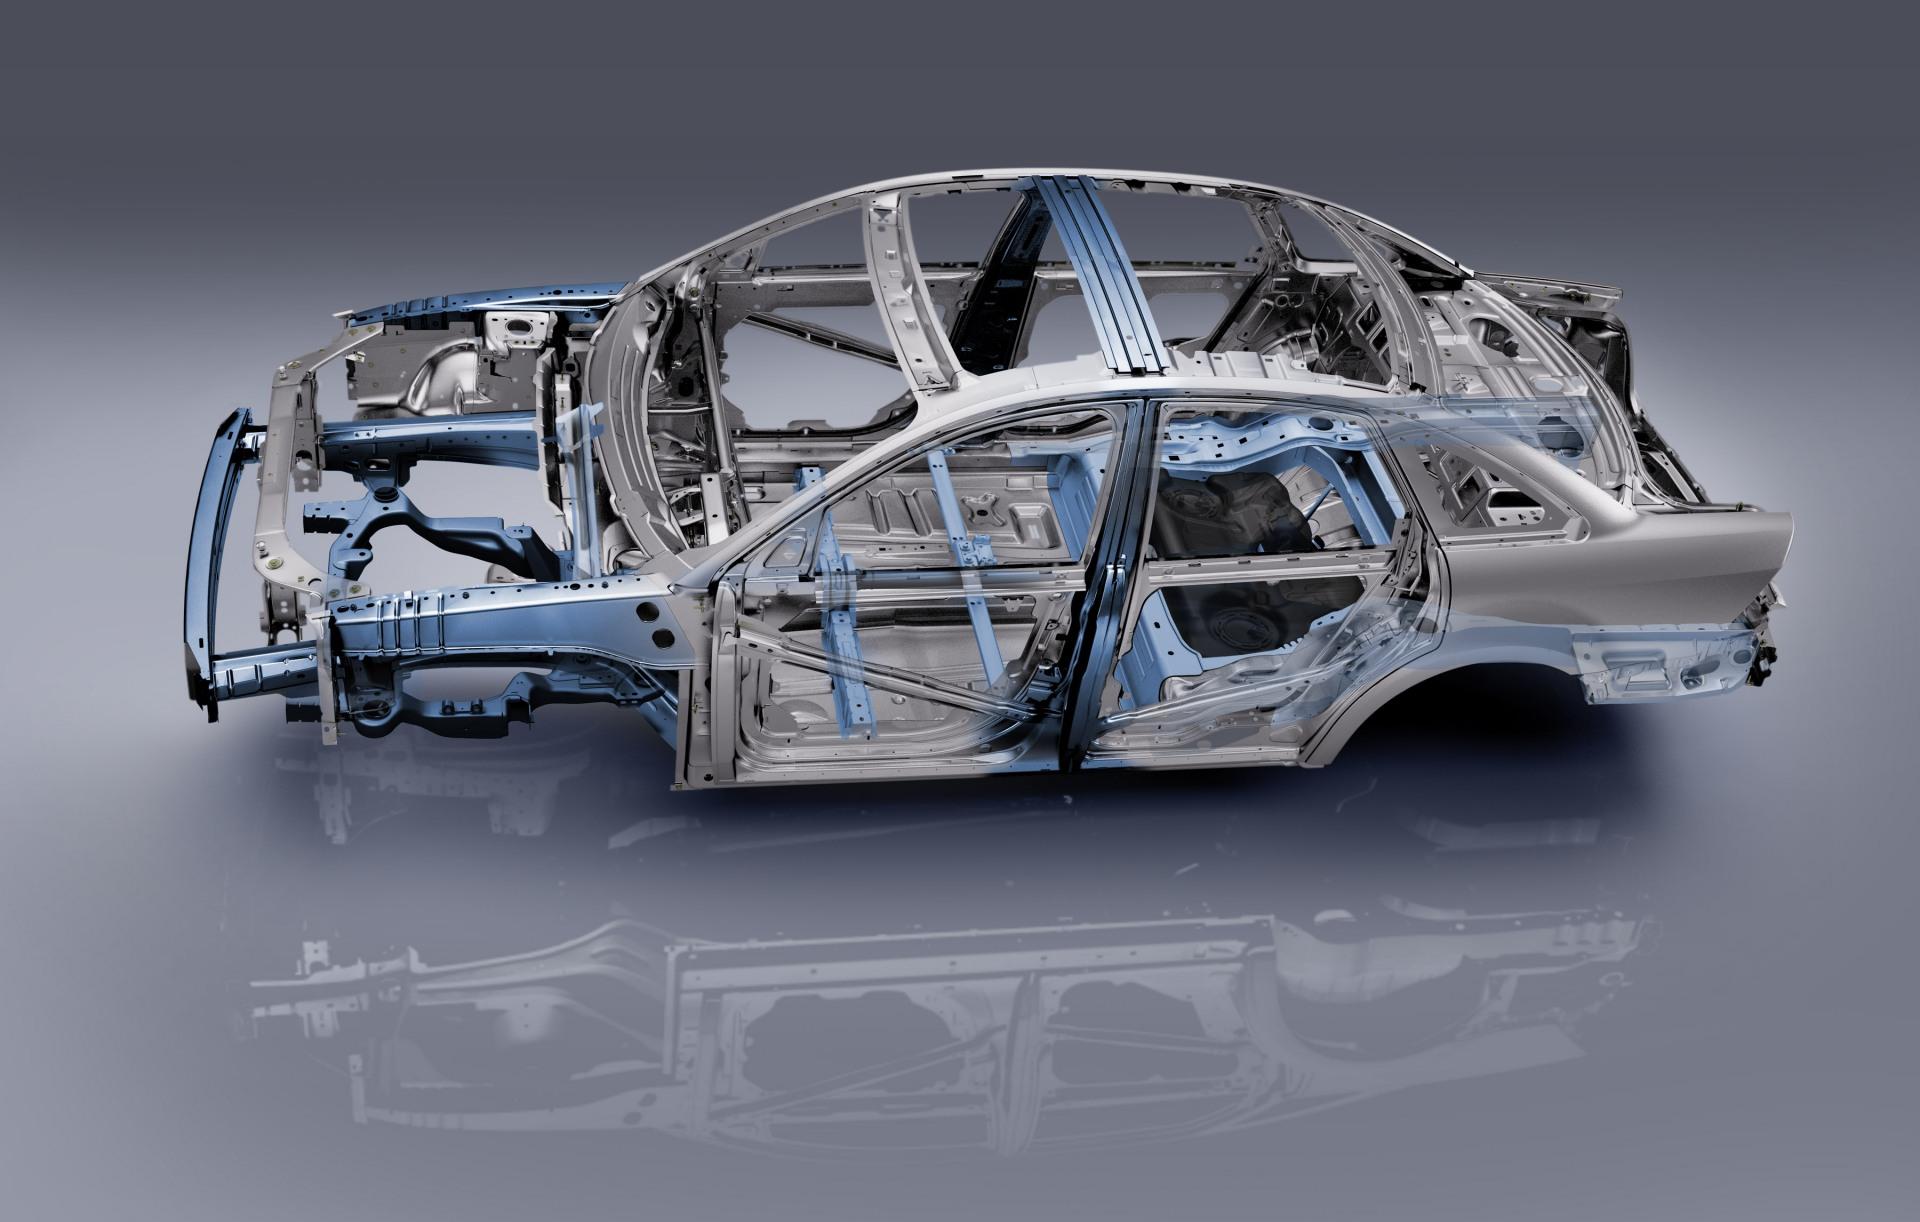 Купить элементы кузова. Алюминиевые детали кузова хс90. Алюминиевый кузов BMW x2. Алюминиевый кузов Мерседес. Ауди алюминиевый кузов.